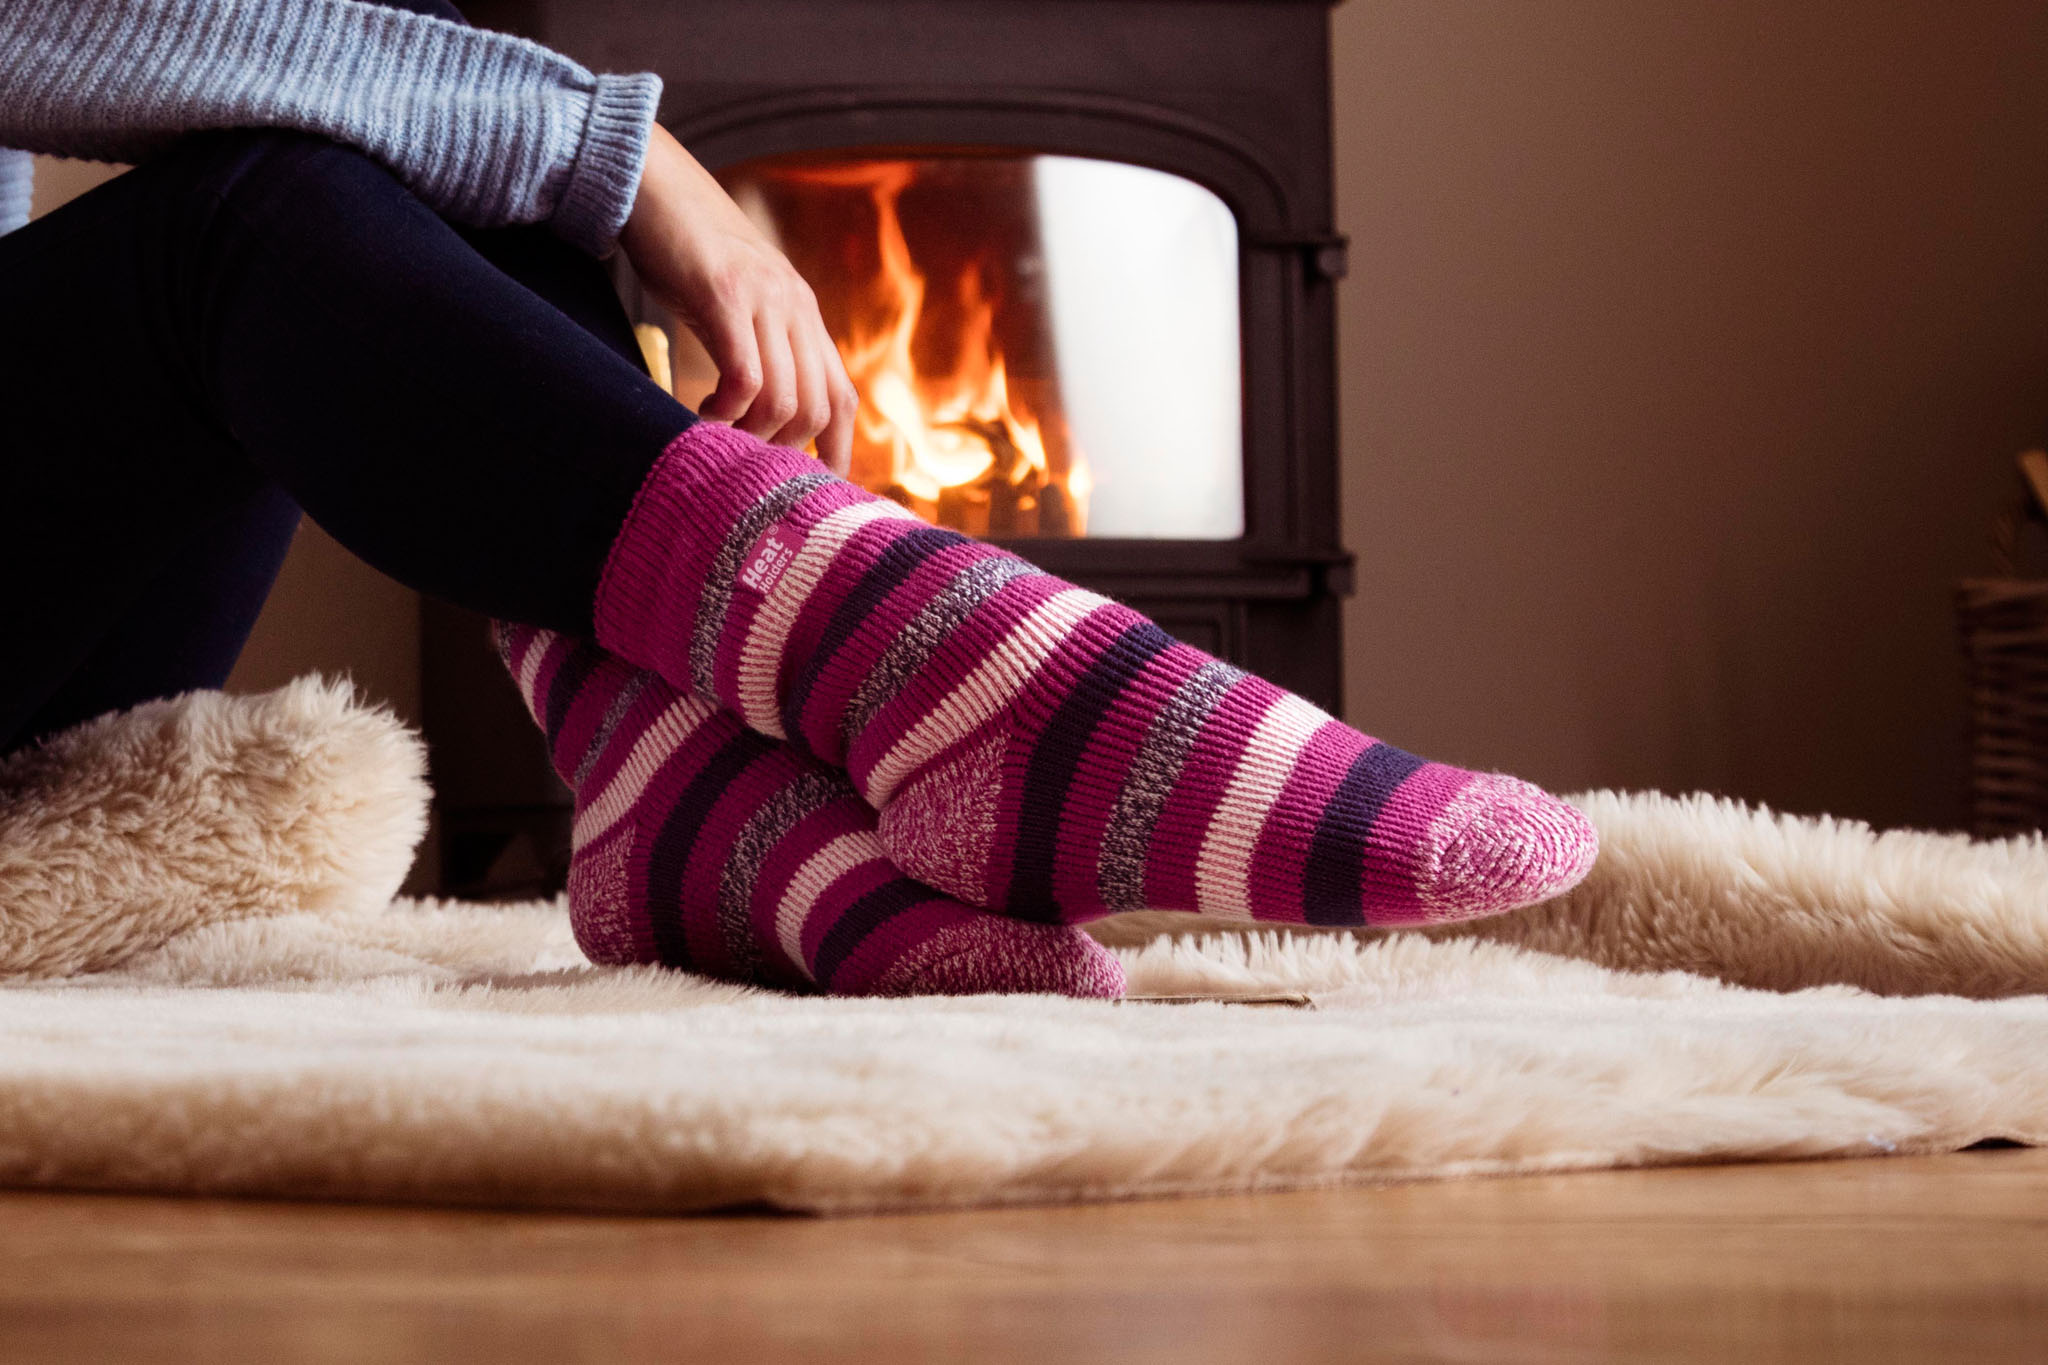 Ladies Original Iris Ankle Slipper Socks - Pink – Heat Holders